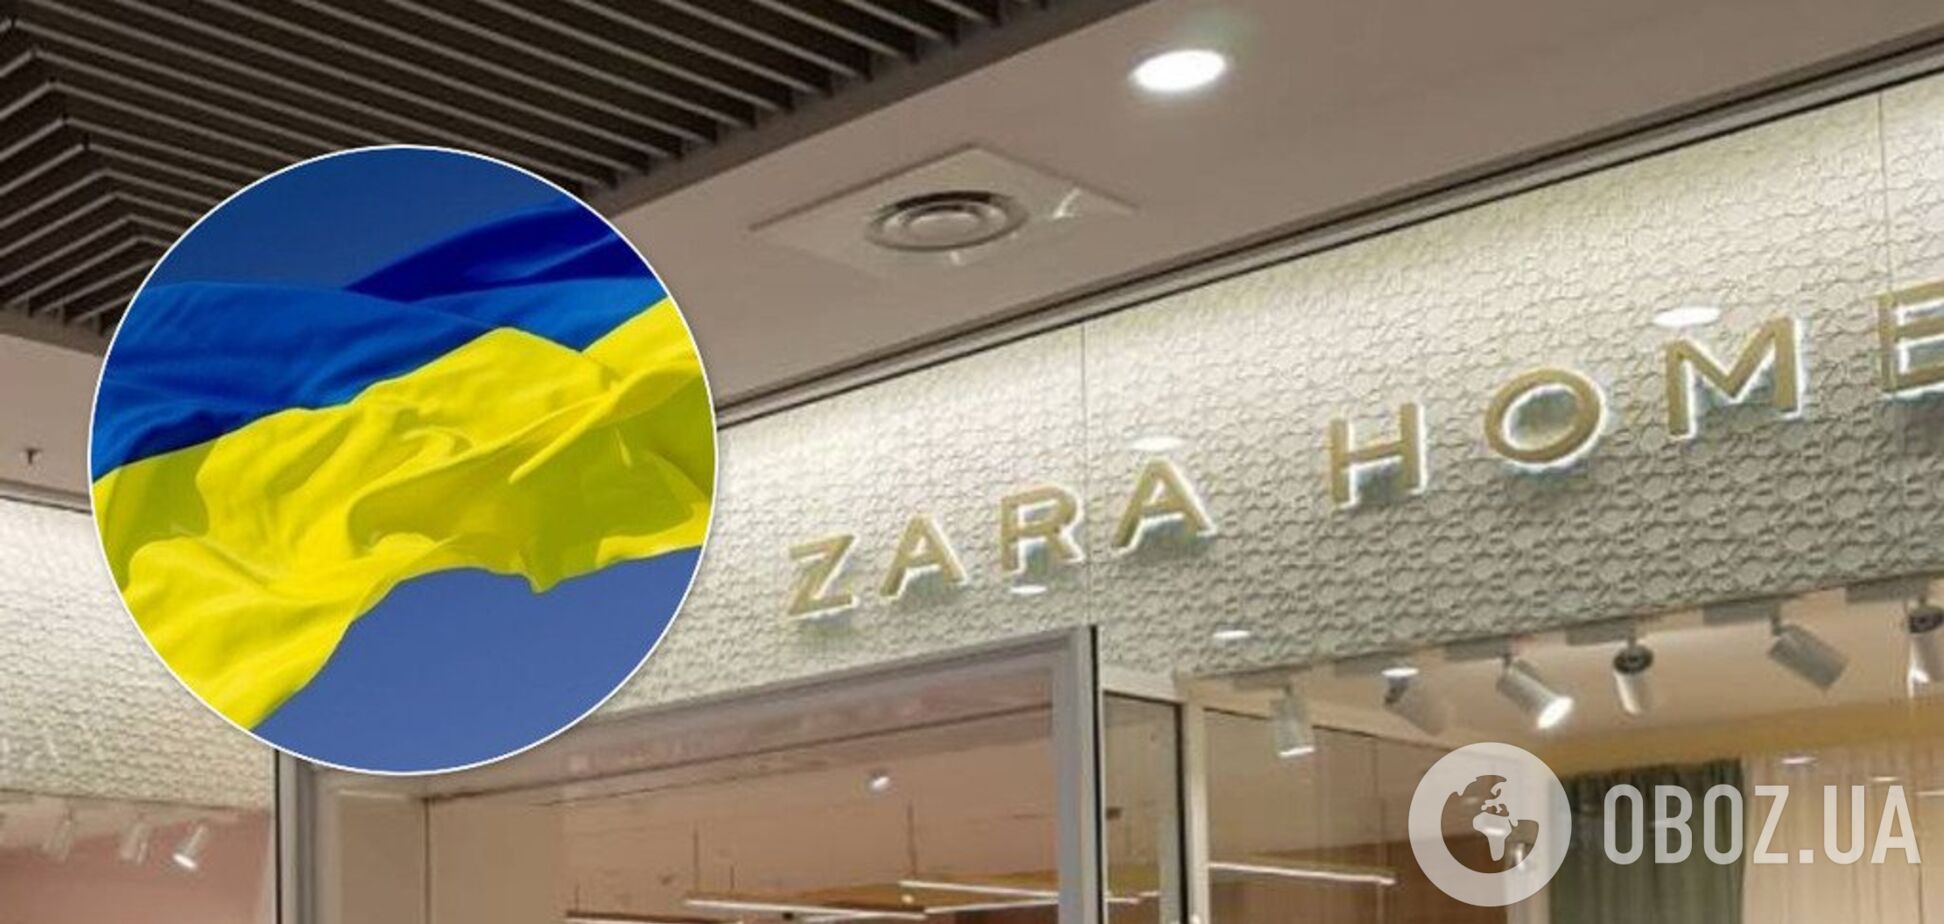 'Тільки російською!' Zara втрапила в скандал через українську мову